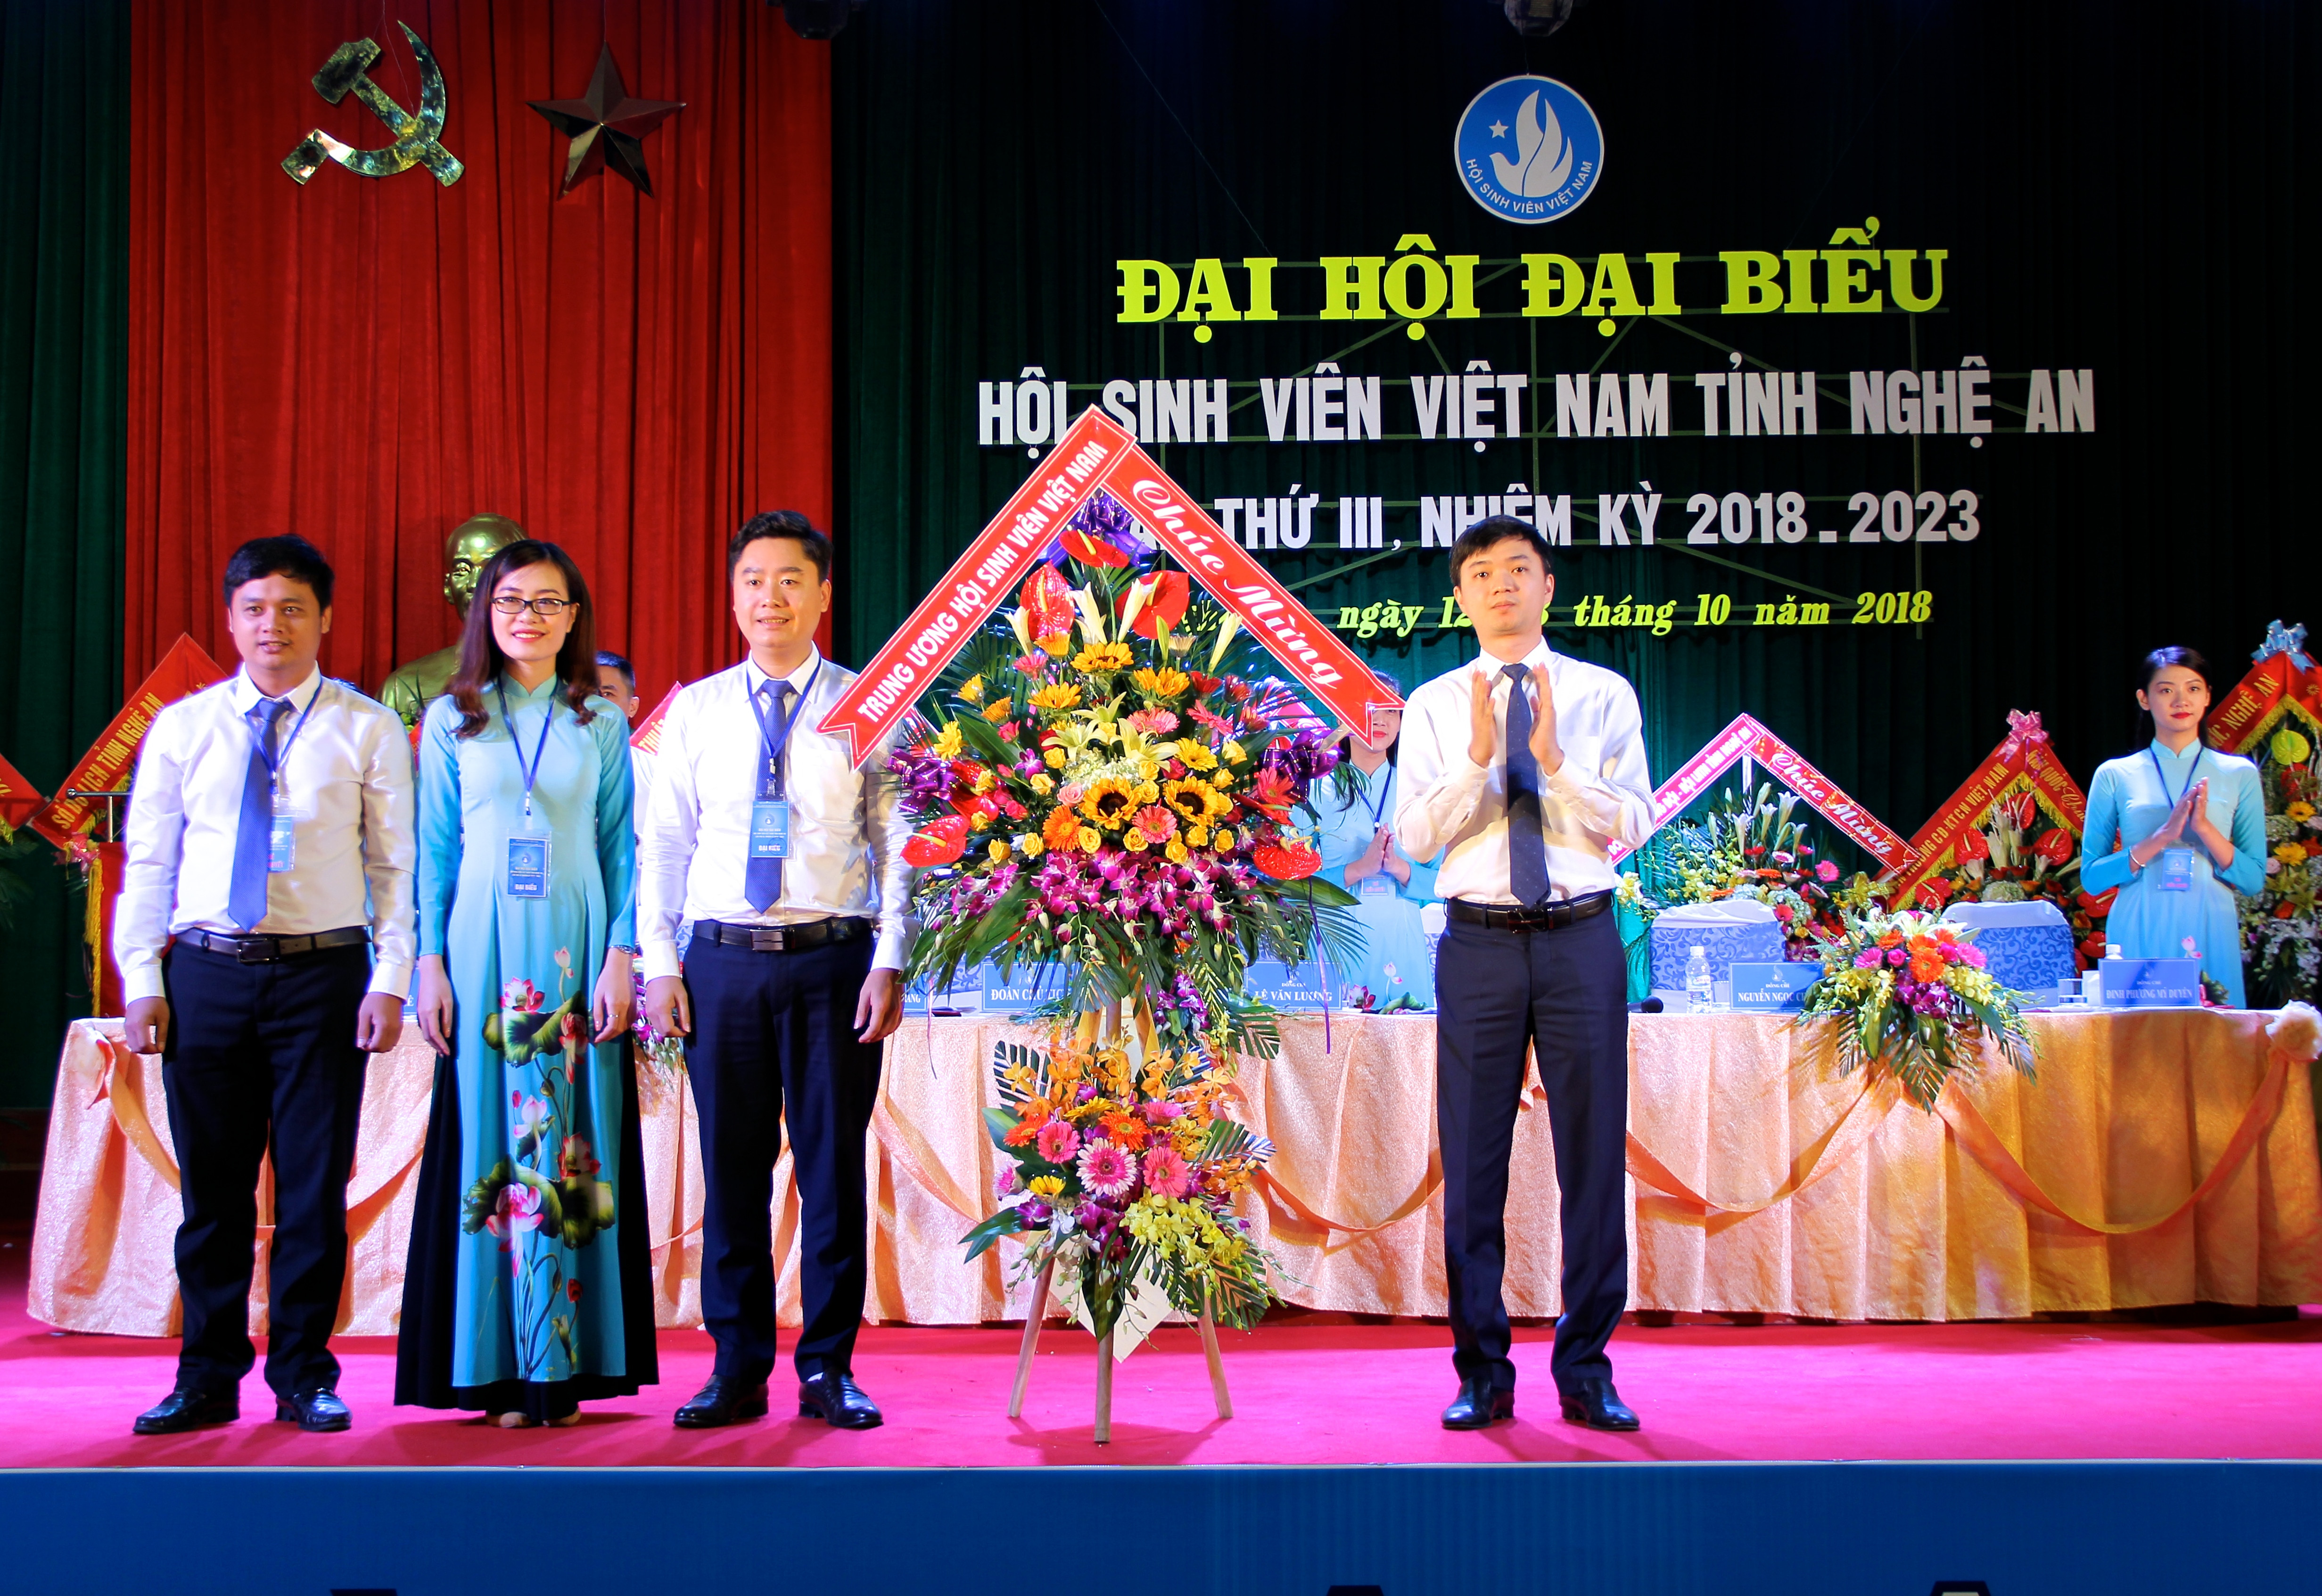 Trung ương Hội sinh viên Việt Nam trao tặng lẵng hoa cho Ban Chấp hành Hội Sinh viên Nghệ An khóa III. Ảnh: Mỹ Nga